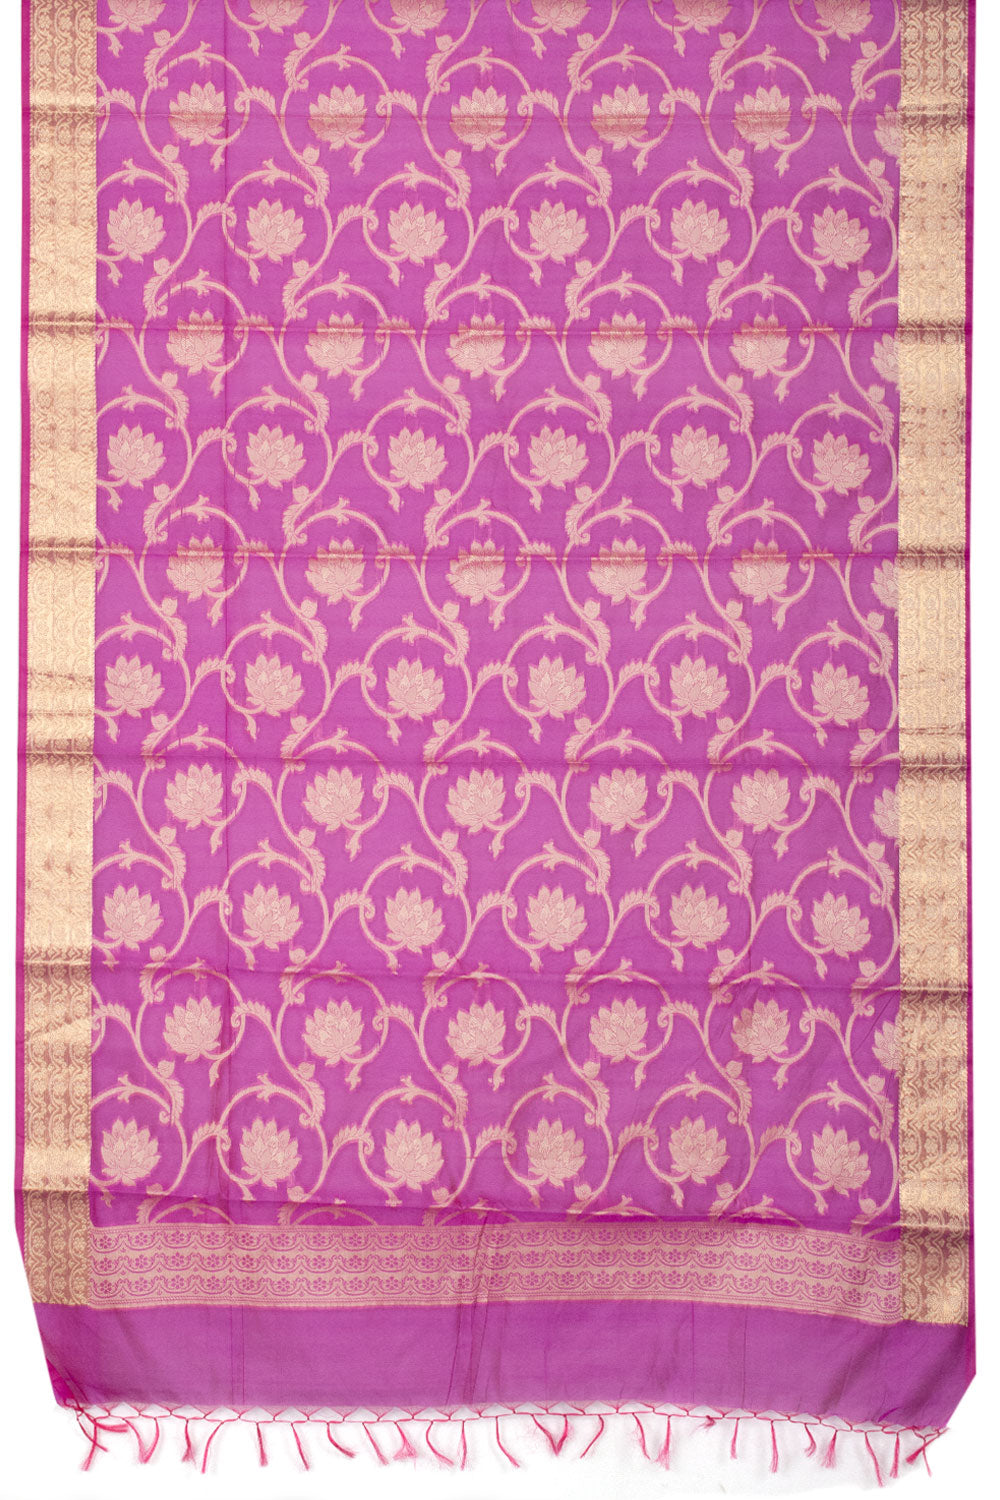 Magenta Banarasi Cotton Salwar Suit Material 10061164